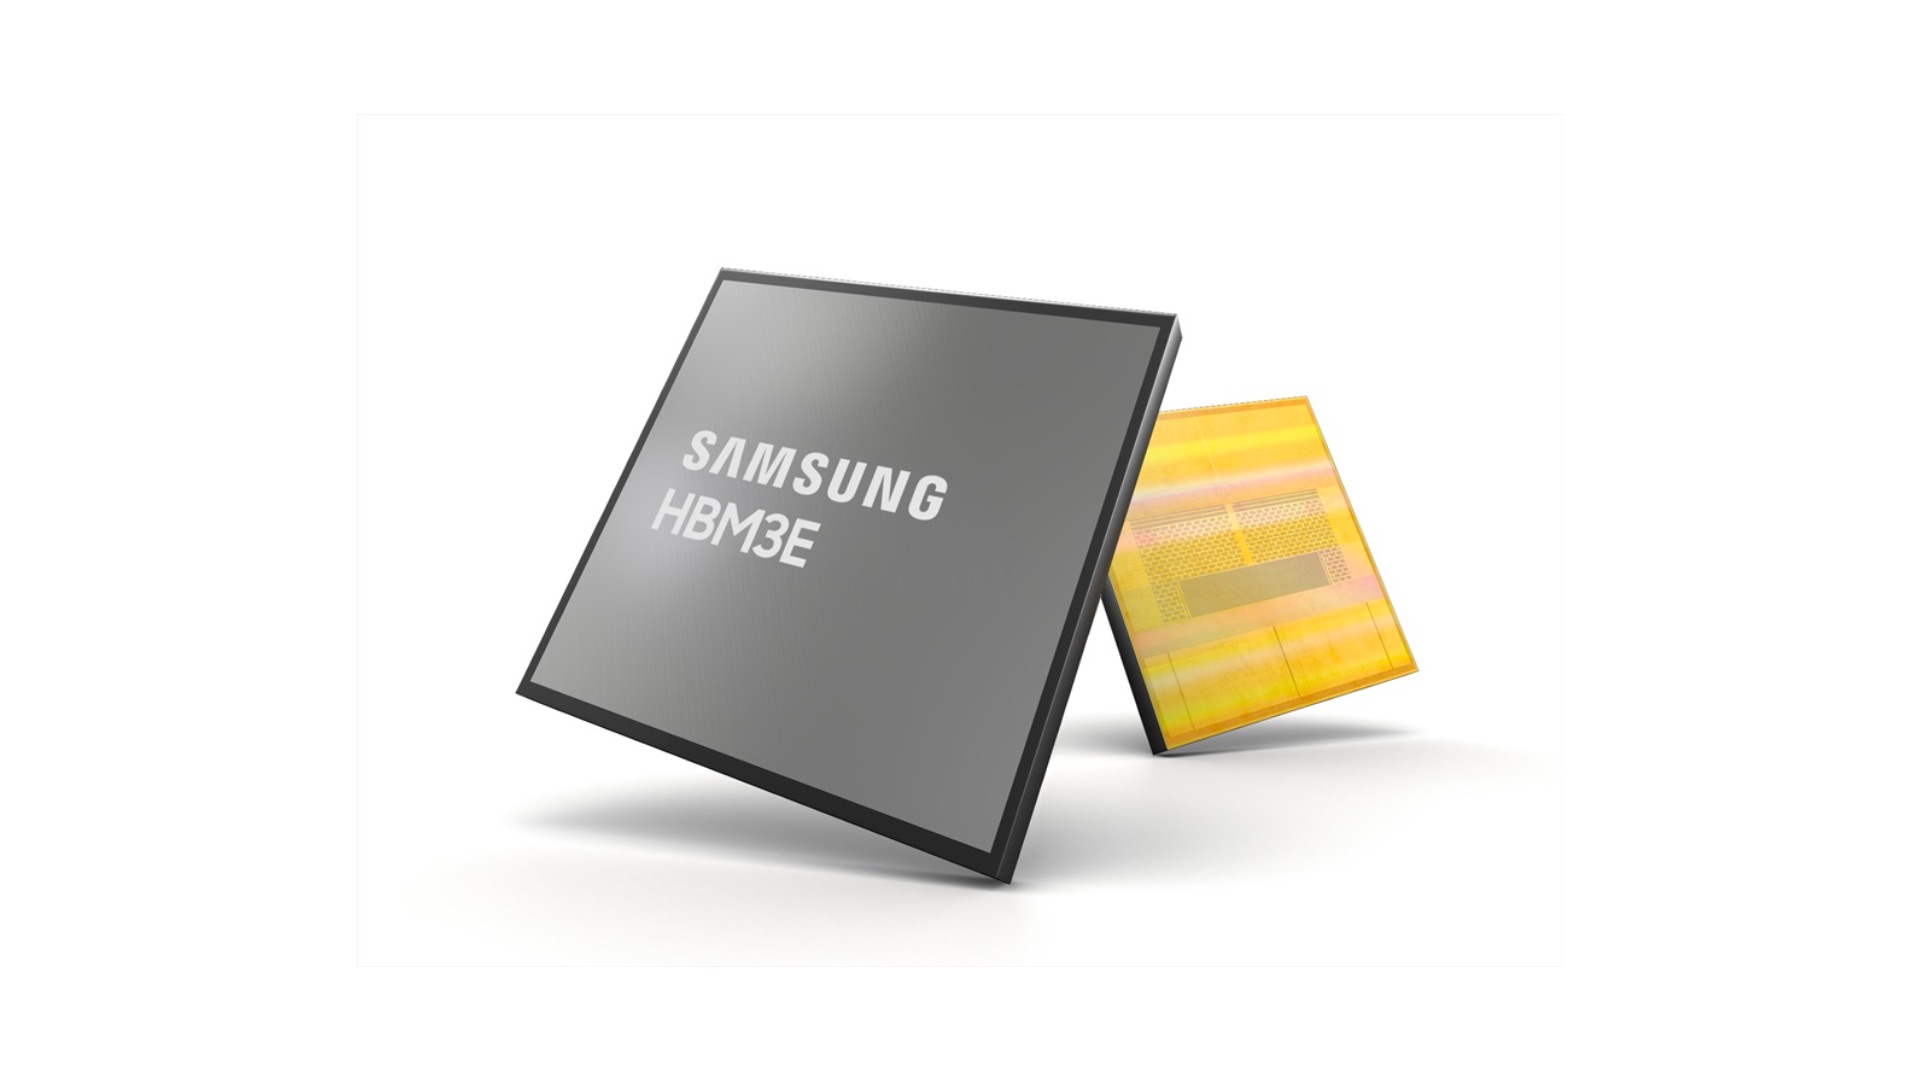 Chinesische Unternehmen kaufen bereits seit einigen Monaten massenhaft die leistungsstarken HBM-Chips von Samsung. 